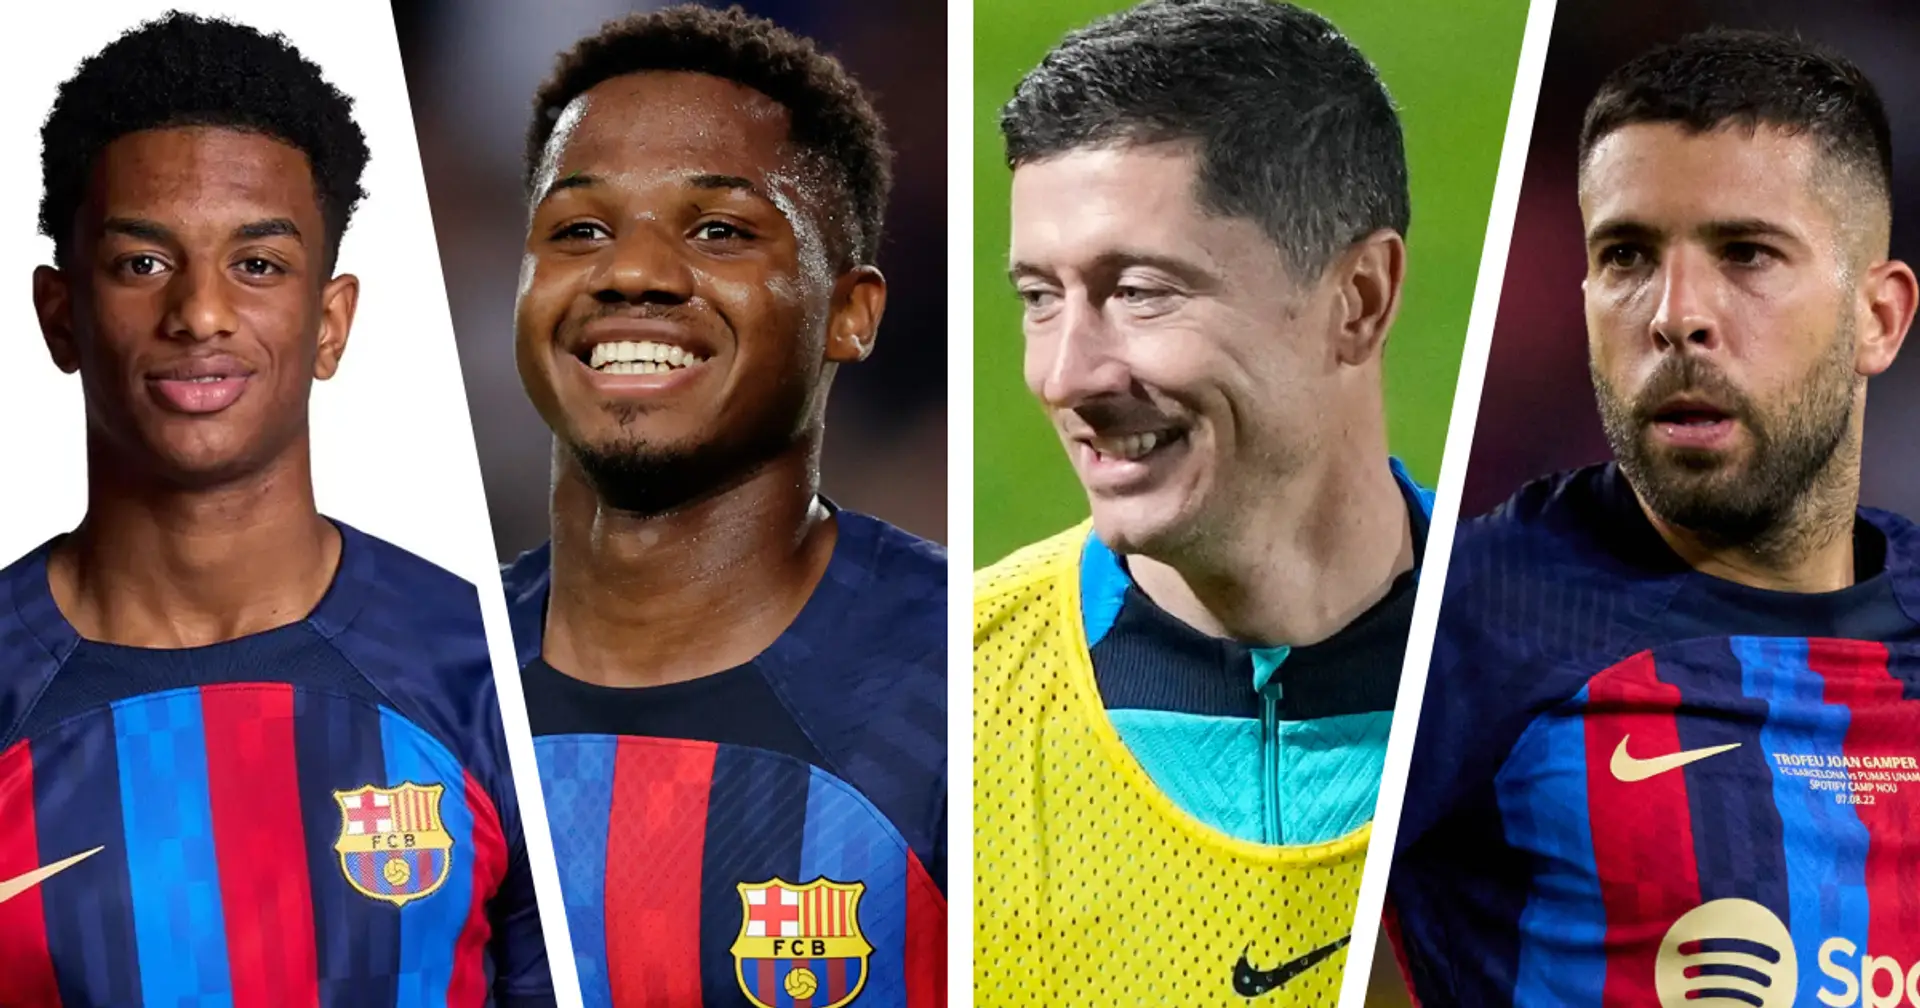 L'effectif complet de 22 joueurs du Barça après la fenêtre de transfert de janvier